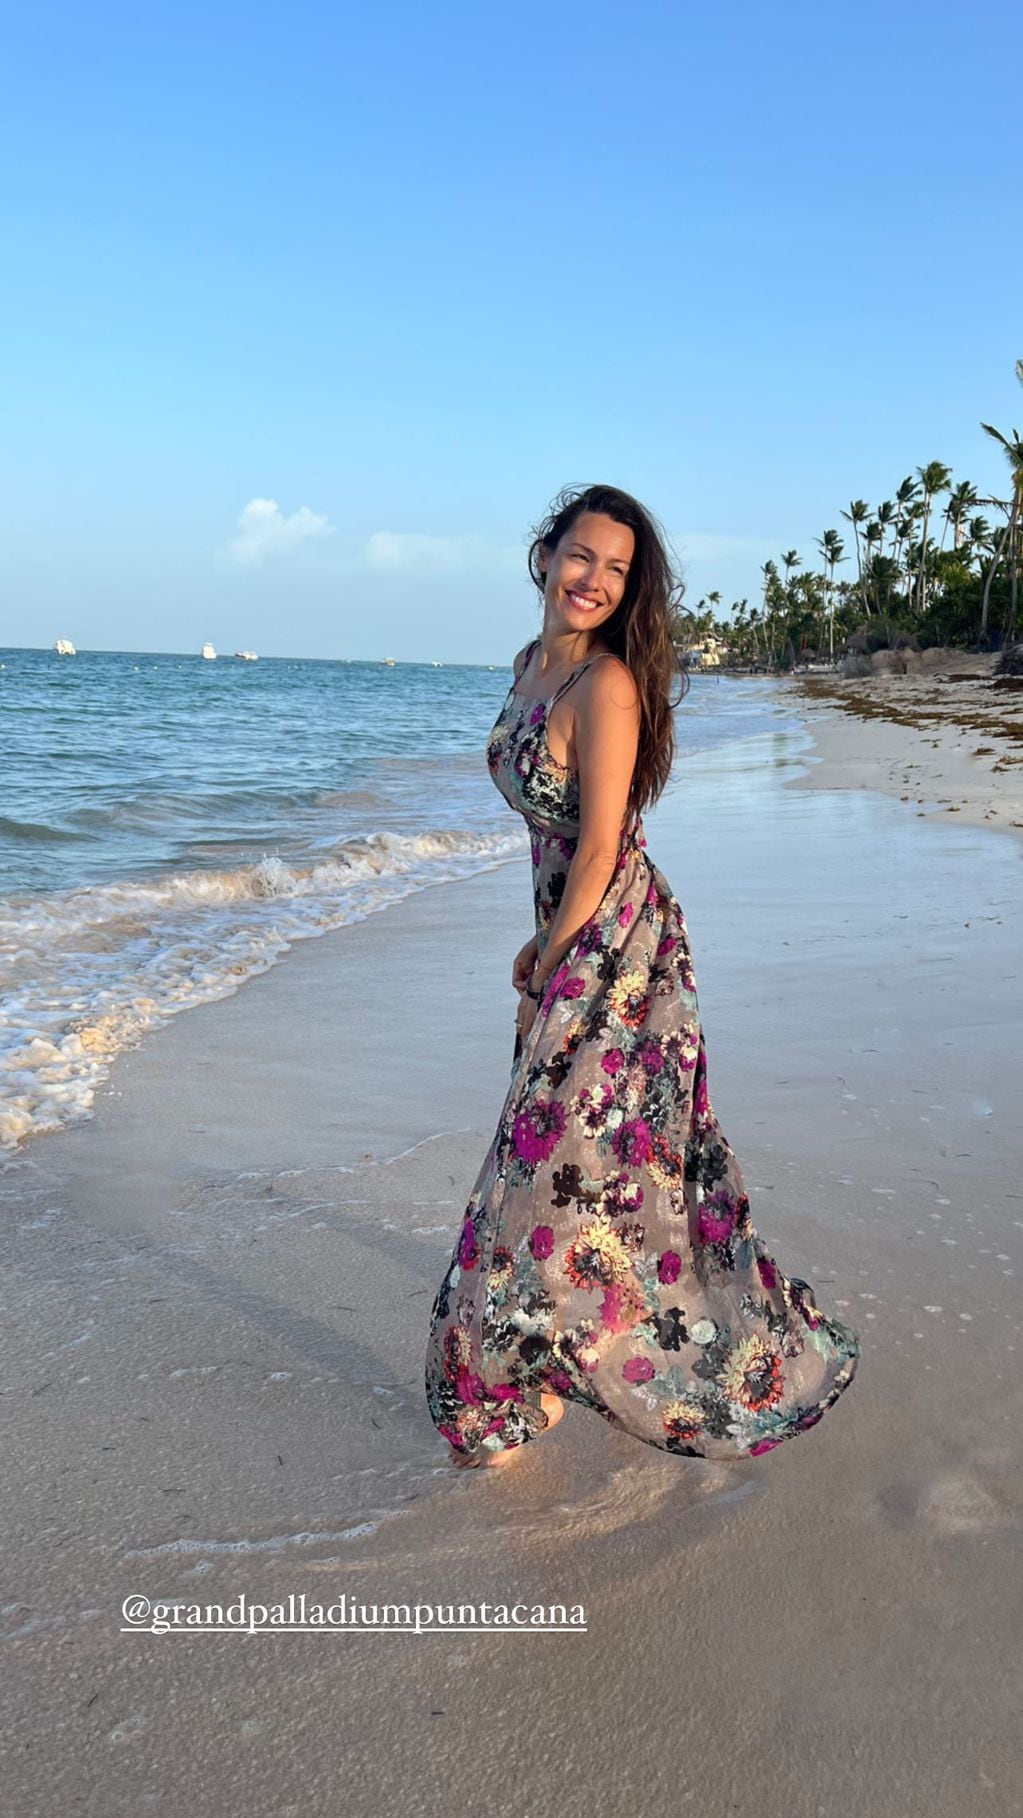 Pampita cautivó con su maxi vestido estampado desde Punta Cana.